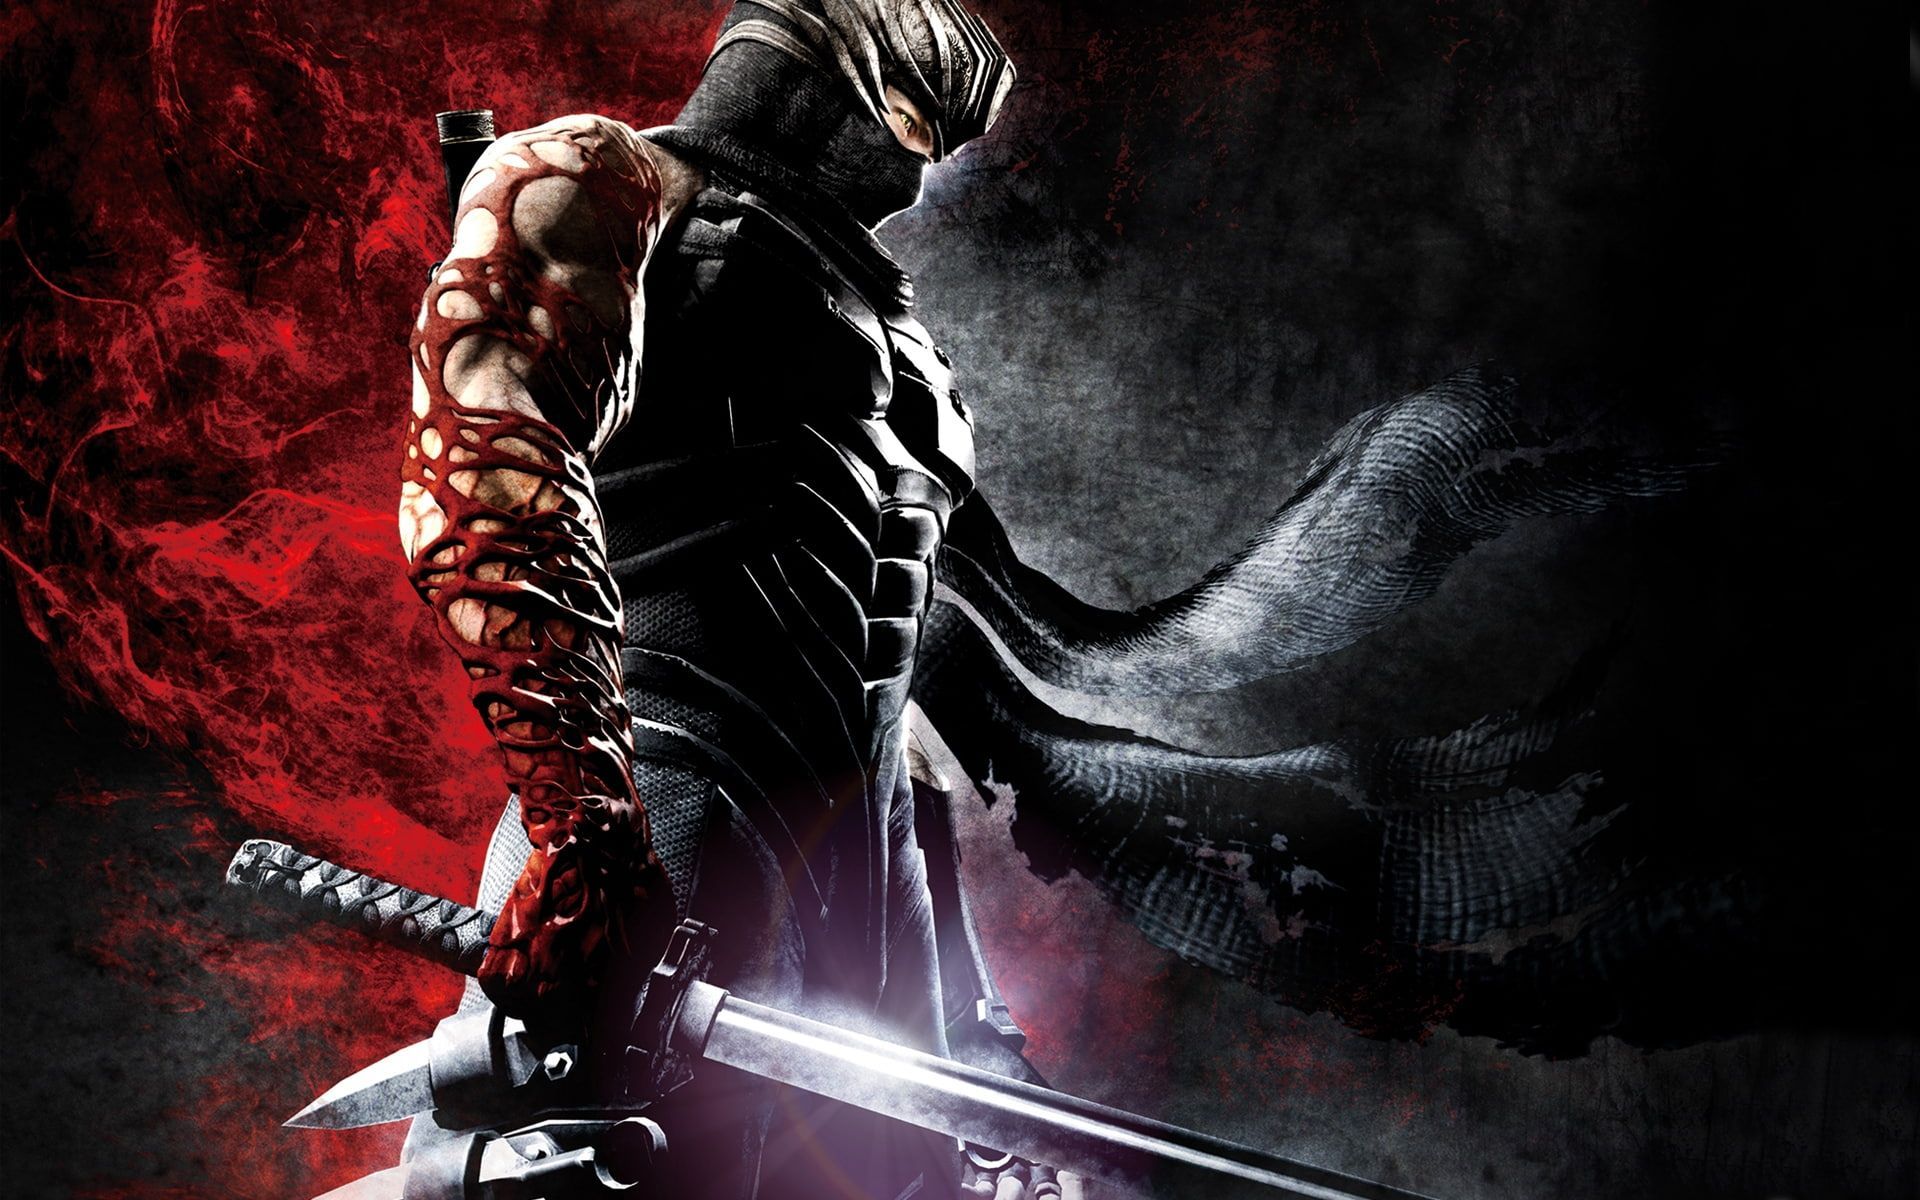 Cool Ninja Gaiden 3 #blood #background #mask #sword #steel P